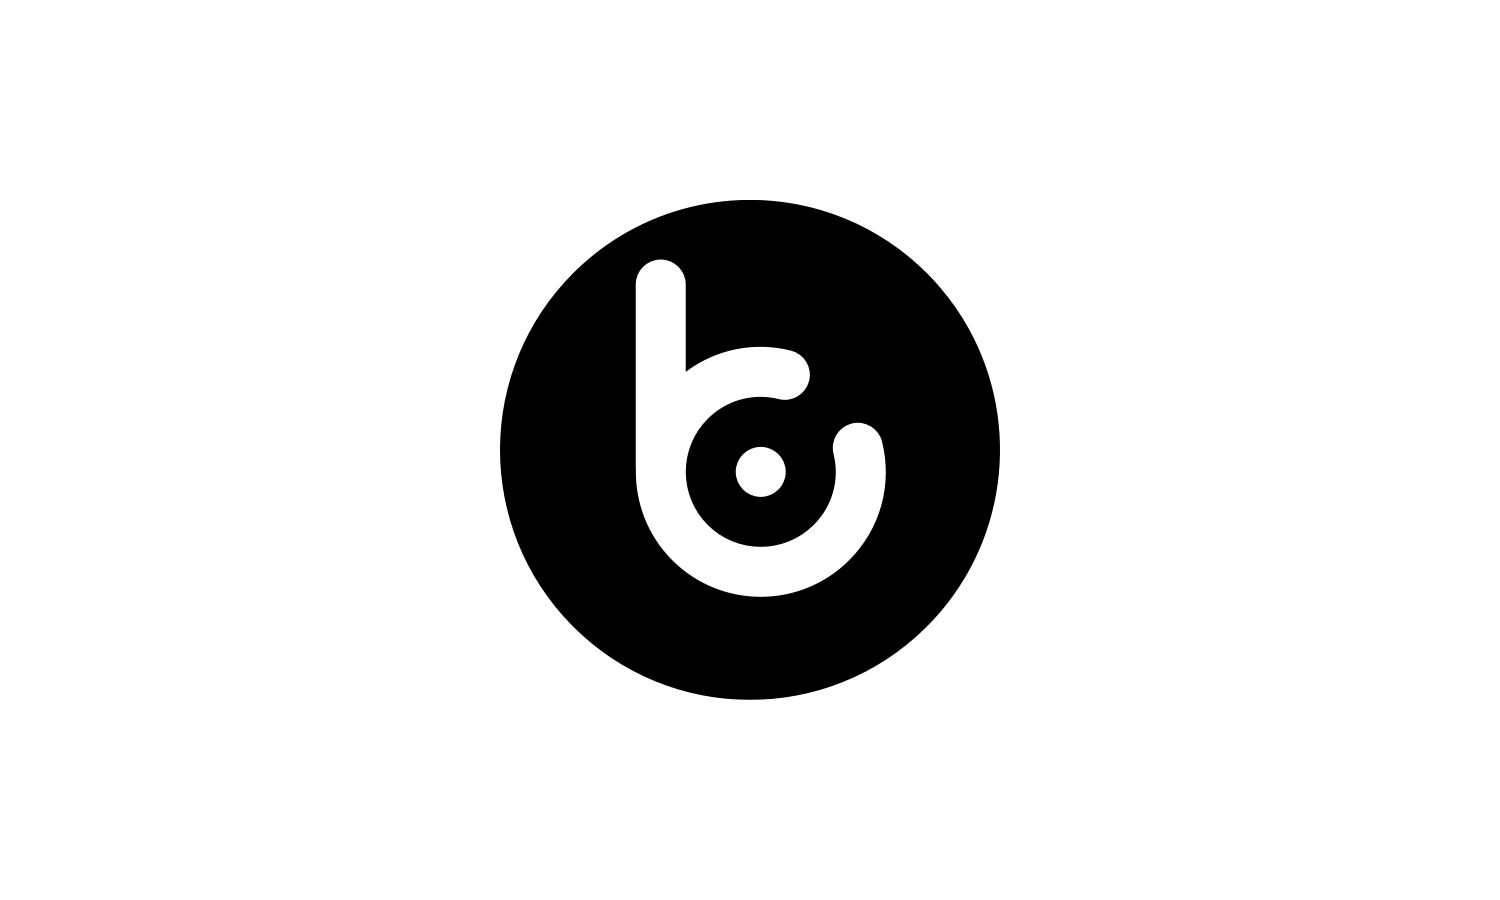 travelbay logo symbol dark